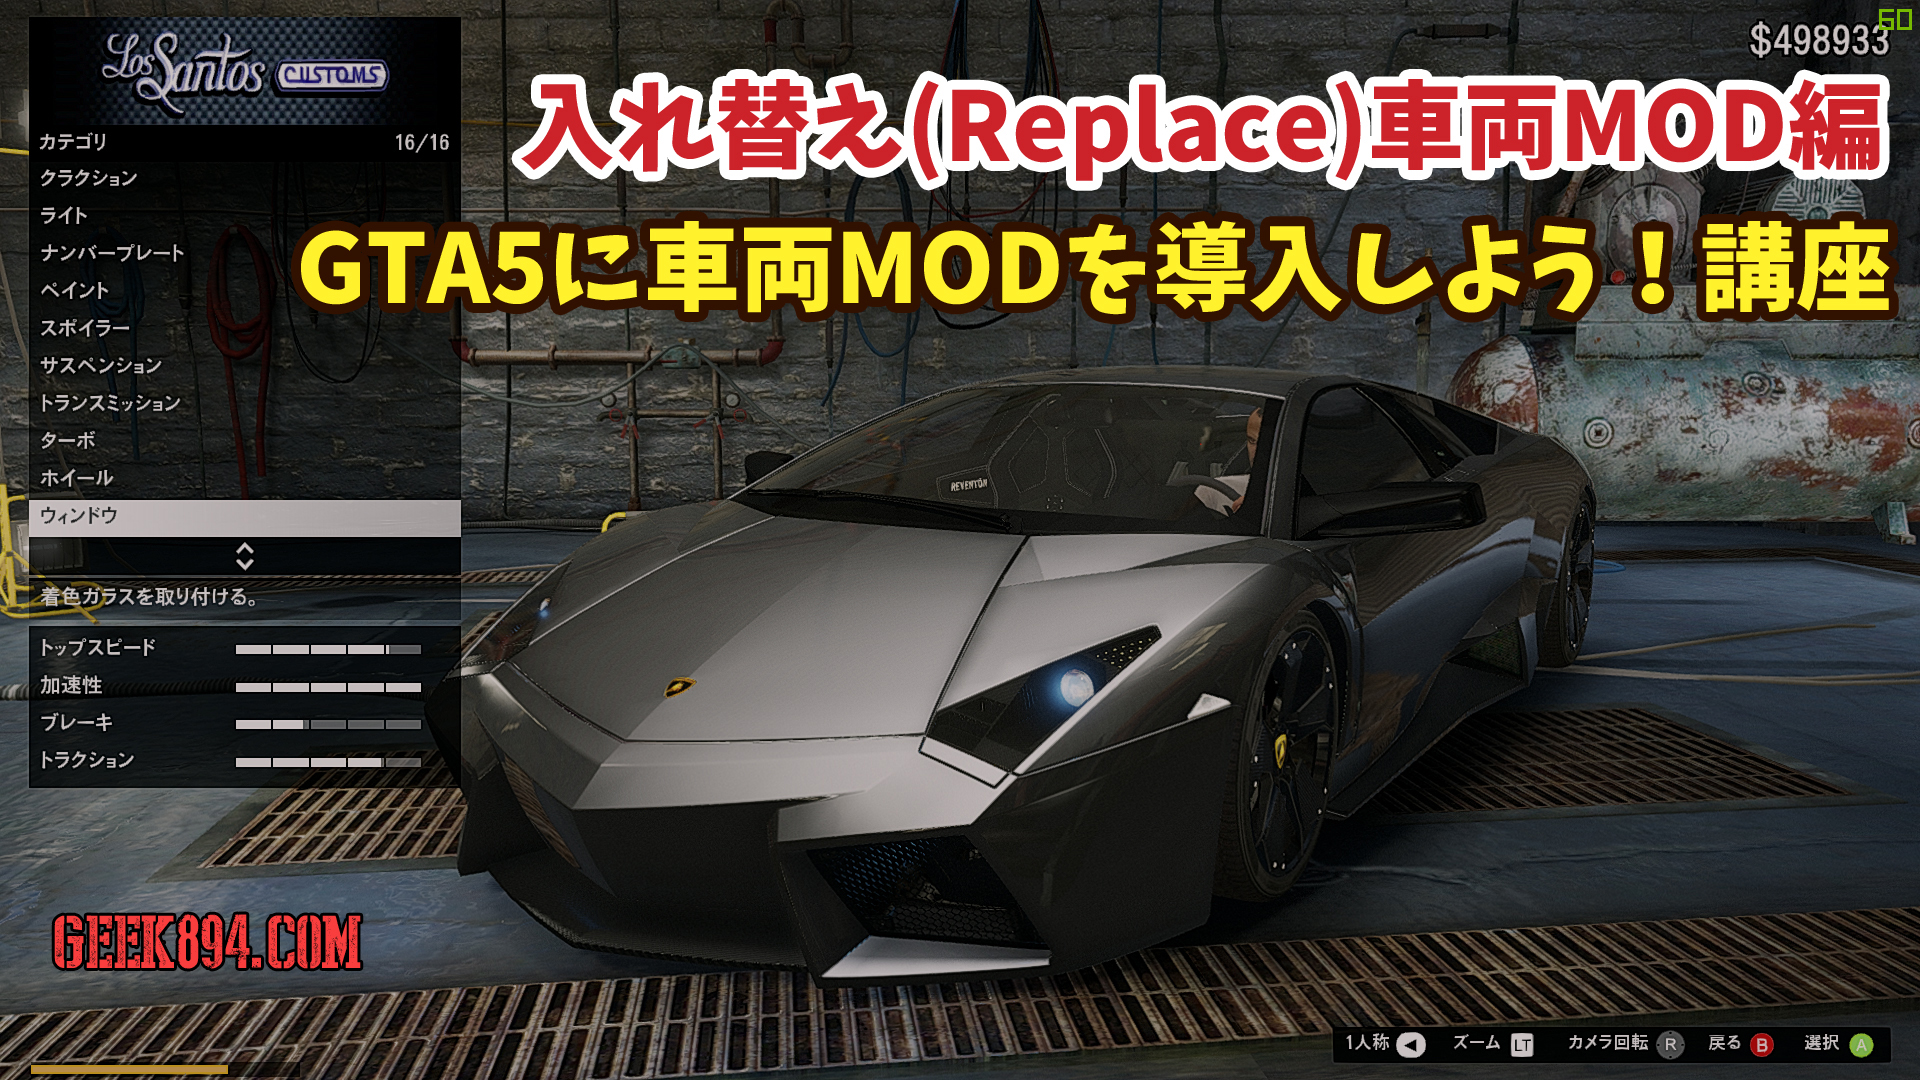 Gta5 Mod Replace形式で車両を入れ替えたのに反映されていない時の対処法 エラー解決 Geek4 Com